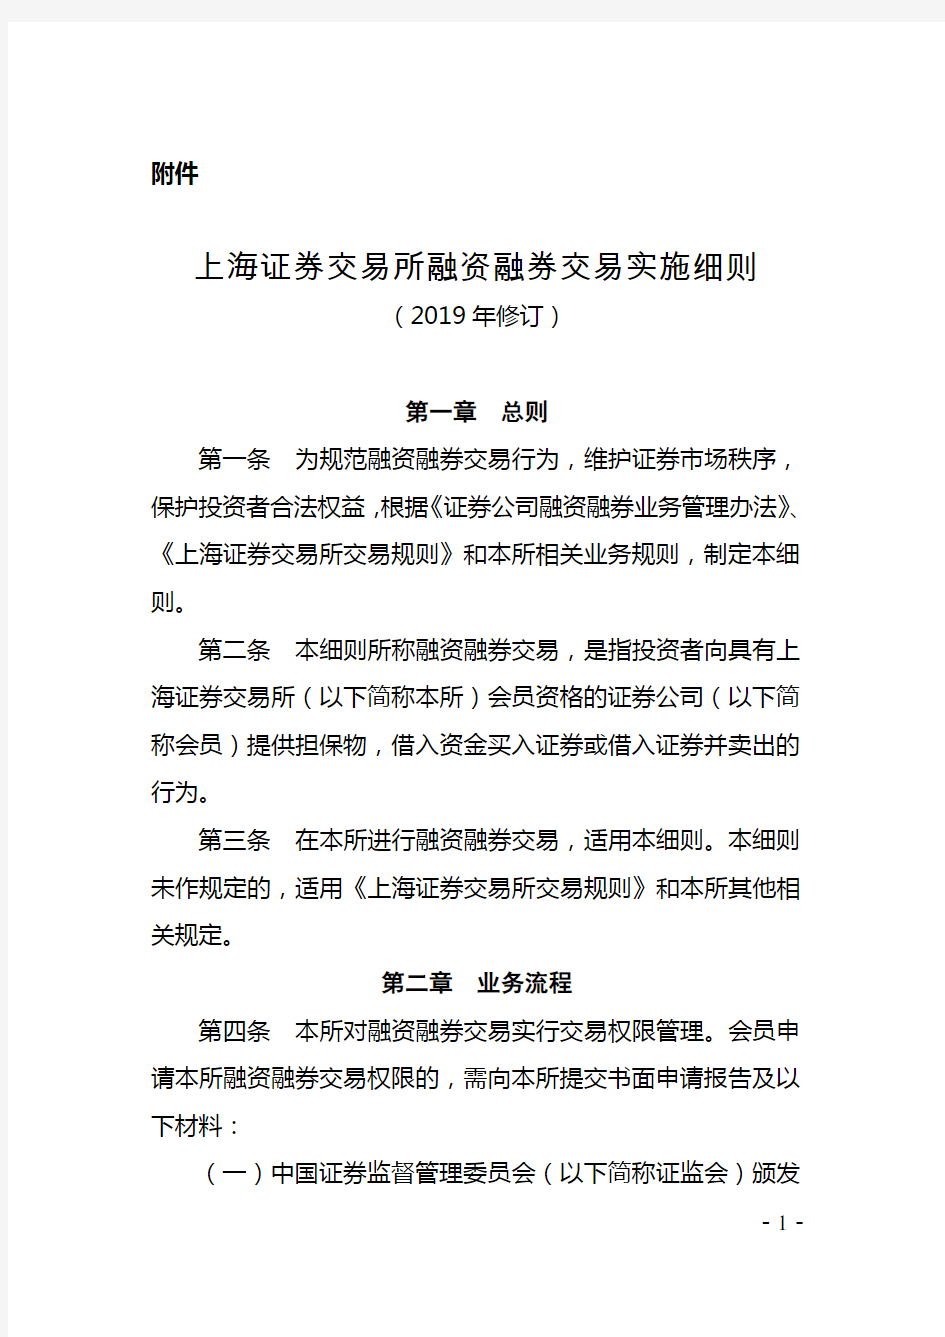 上海证券交易所融资融券交易实施细则(2019年修订)